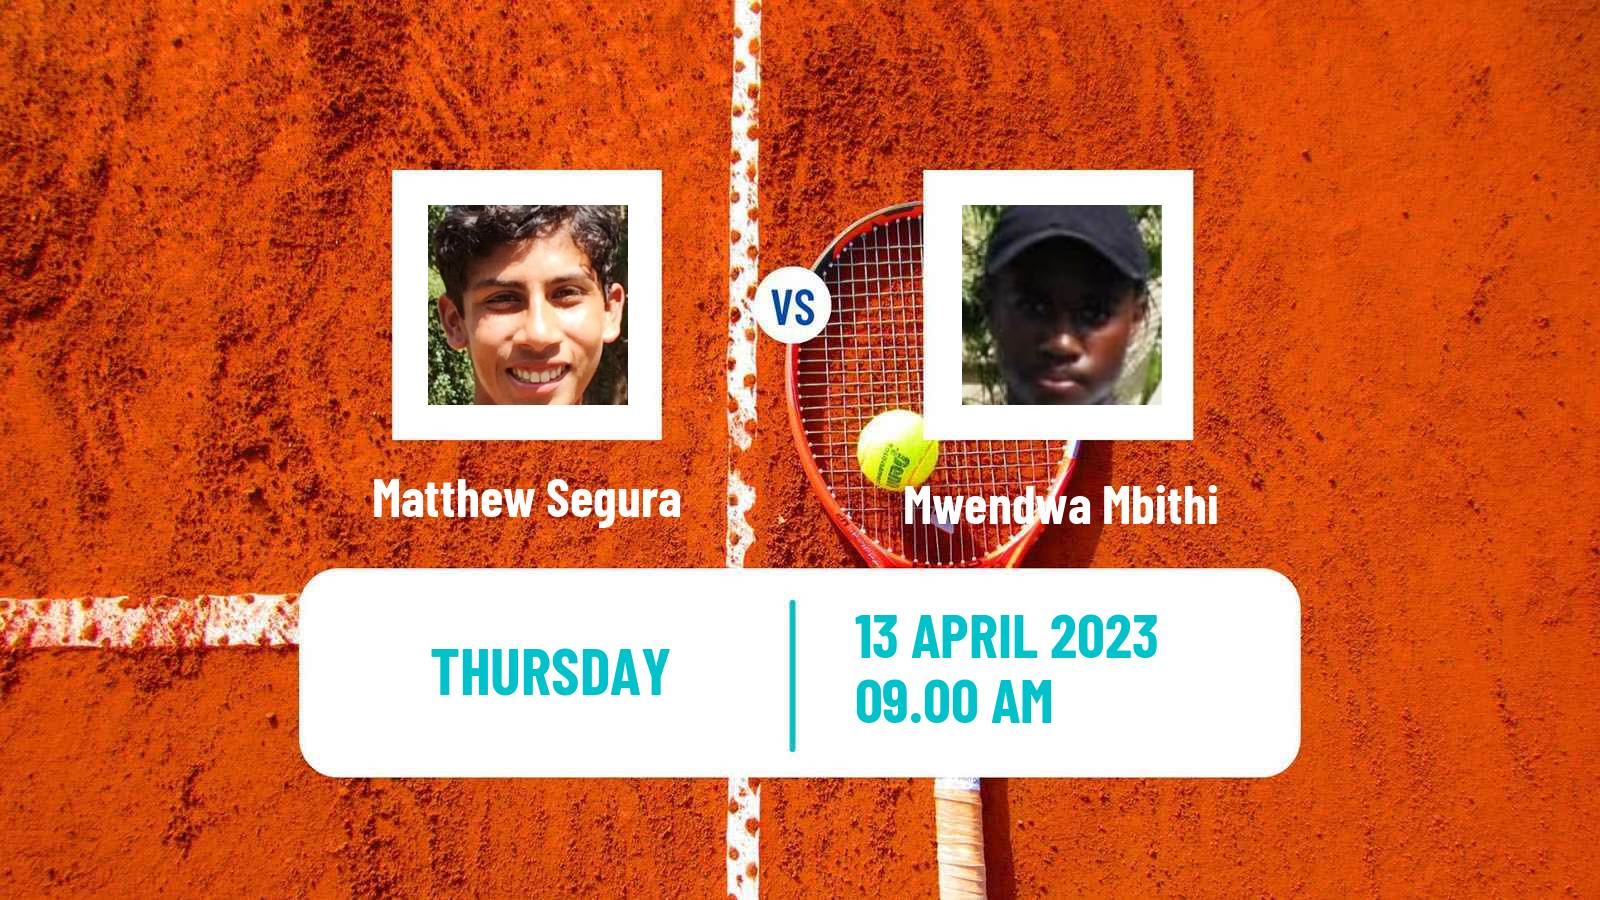 Tennis ITF Tournaments Matthew Segura - Mwendwa Mbithi